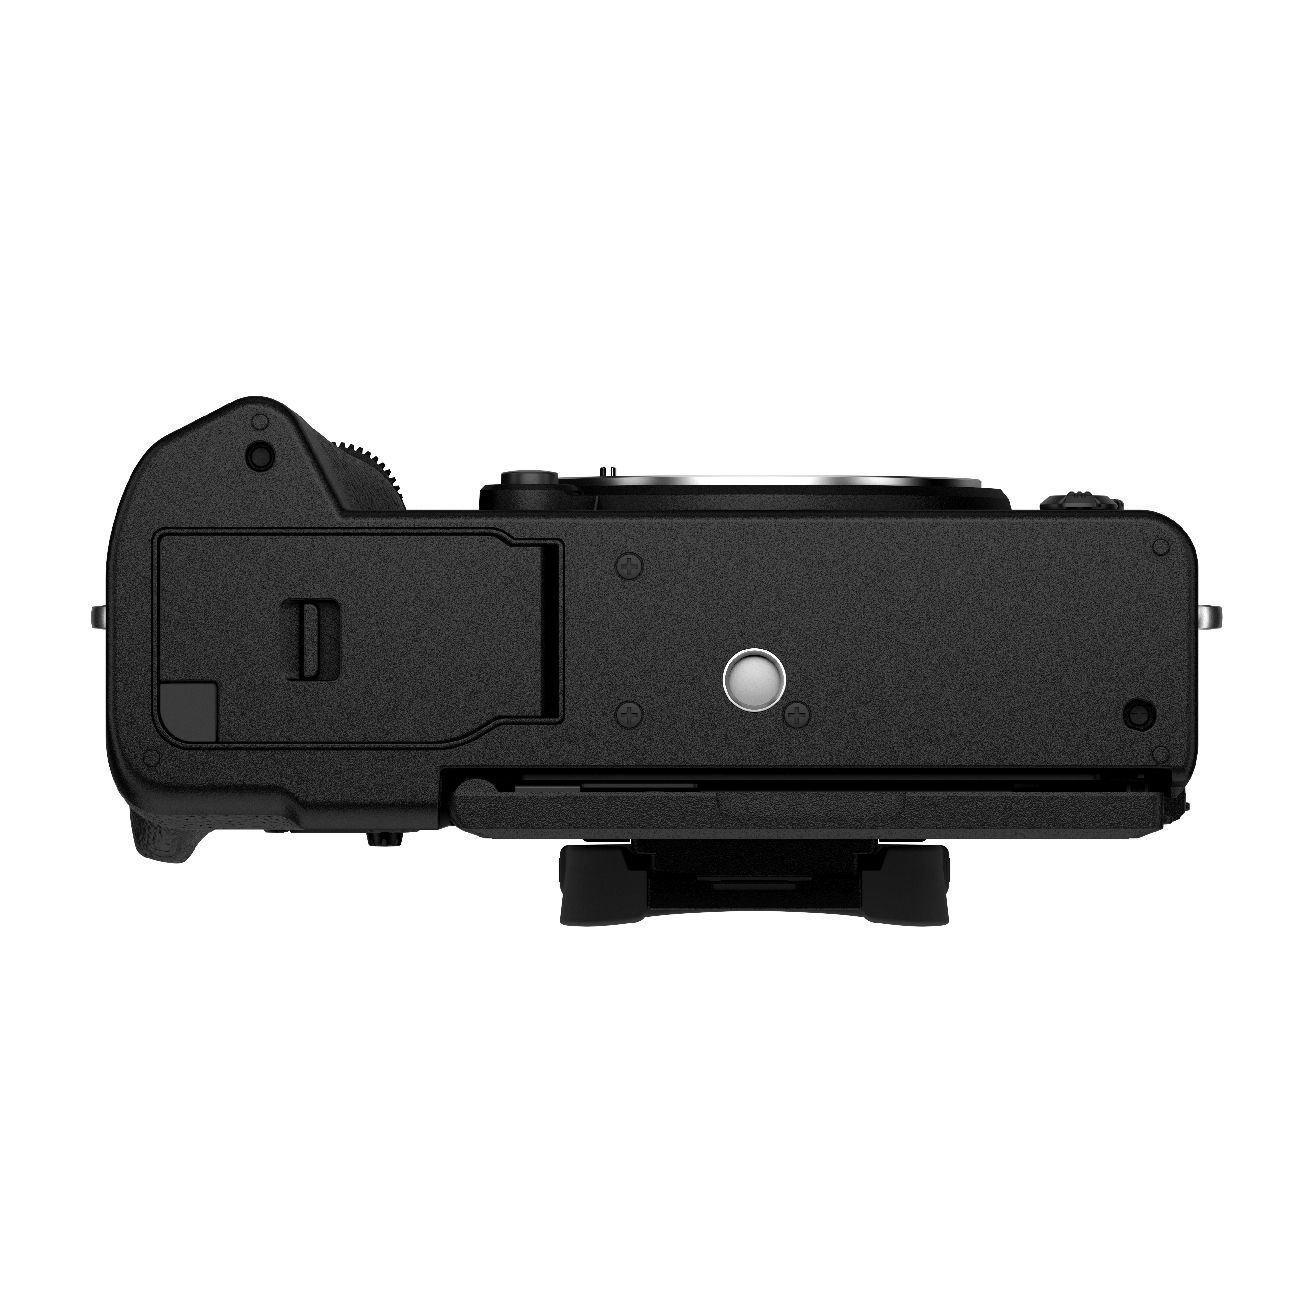 Fujifilm X-T5 schwarz + XF16-80mm 4.0 R OIS WR